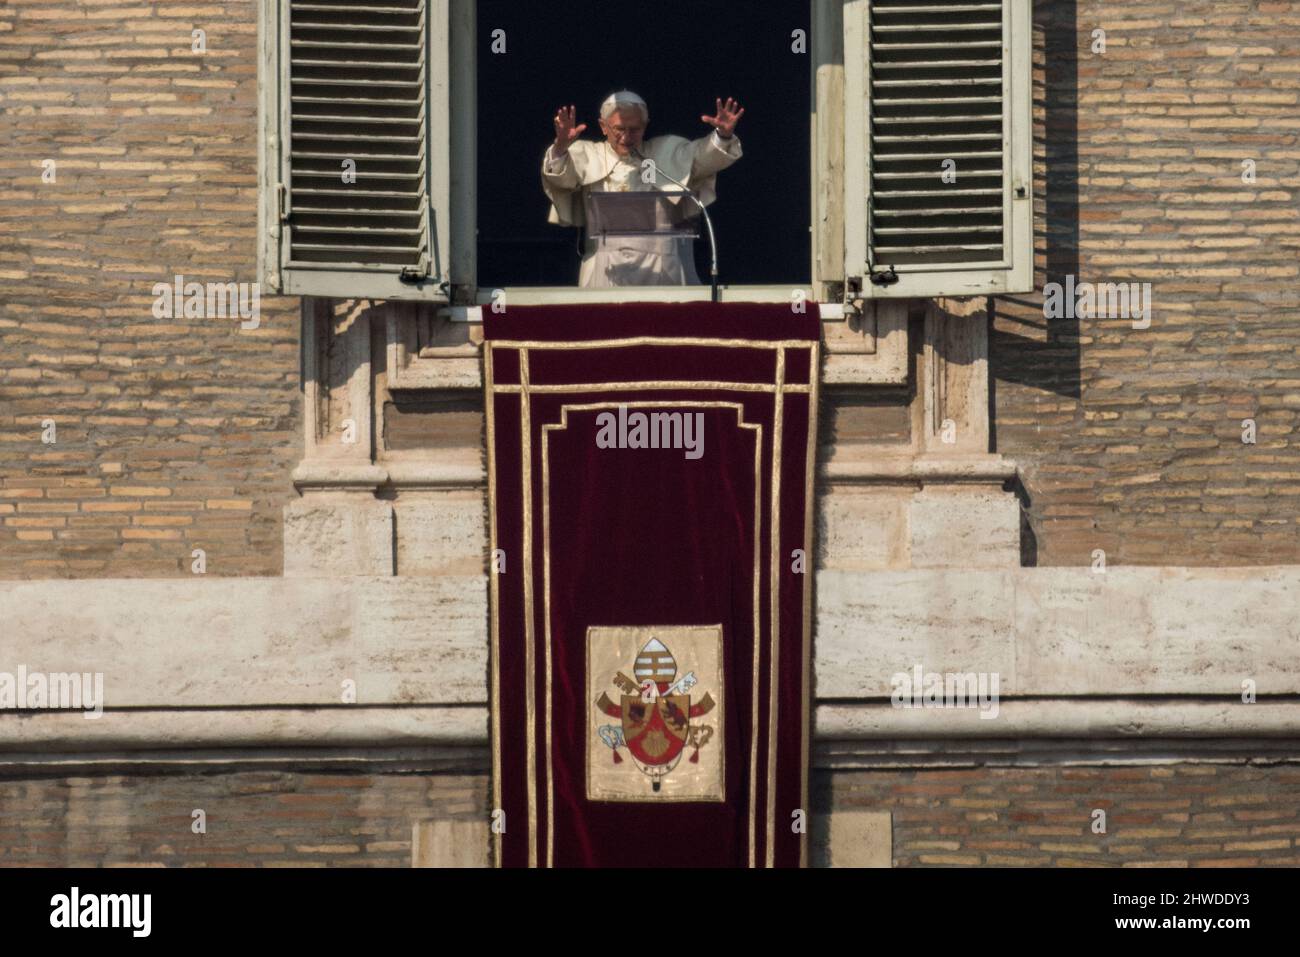 Vatikanstadt, Vatikan 17/02/2013: Papst Benedikt XVI. Angelus-Segen auf dem Petersplatz am 17. Februar 2013 in Vatikanstadt, Vatikan. Der Papst wird am 27. Februar seine letzte wöchentliche öffentliche Audienz auf dem Petersplatz halten, nachdem er letzte Woche seinen Rücktritt angekündigt hatte. ©Andrea Sabbadini Stockfoto